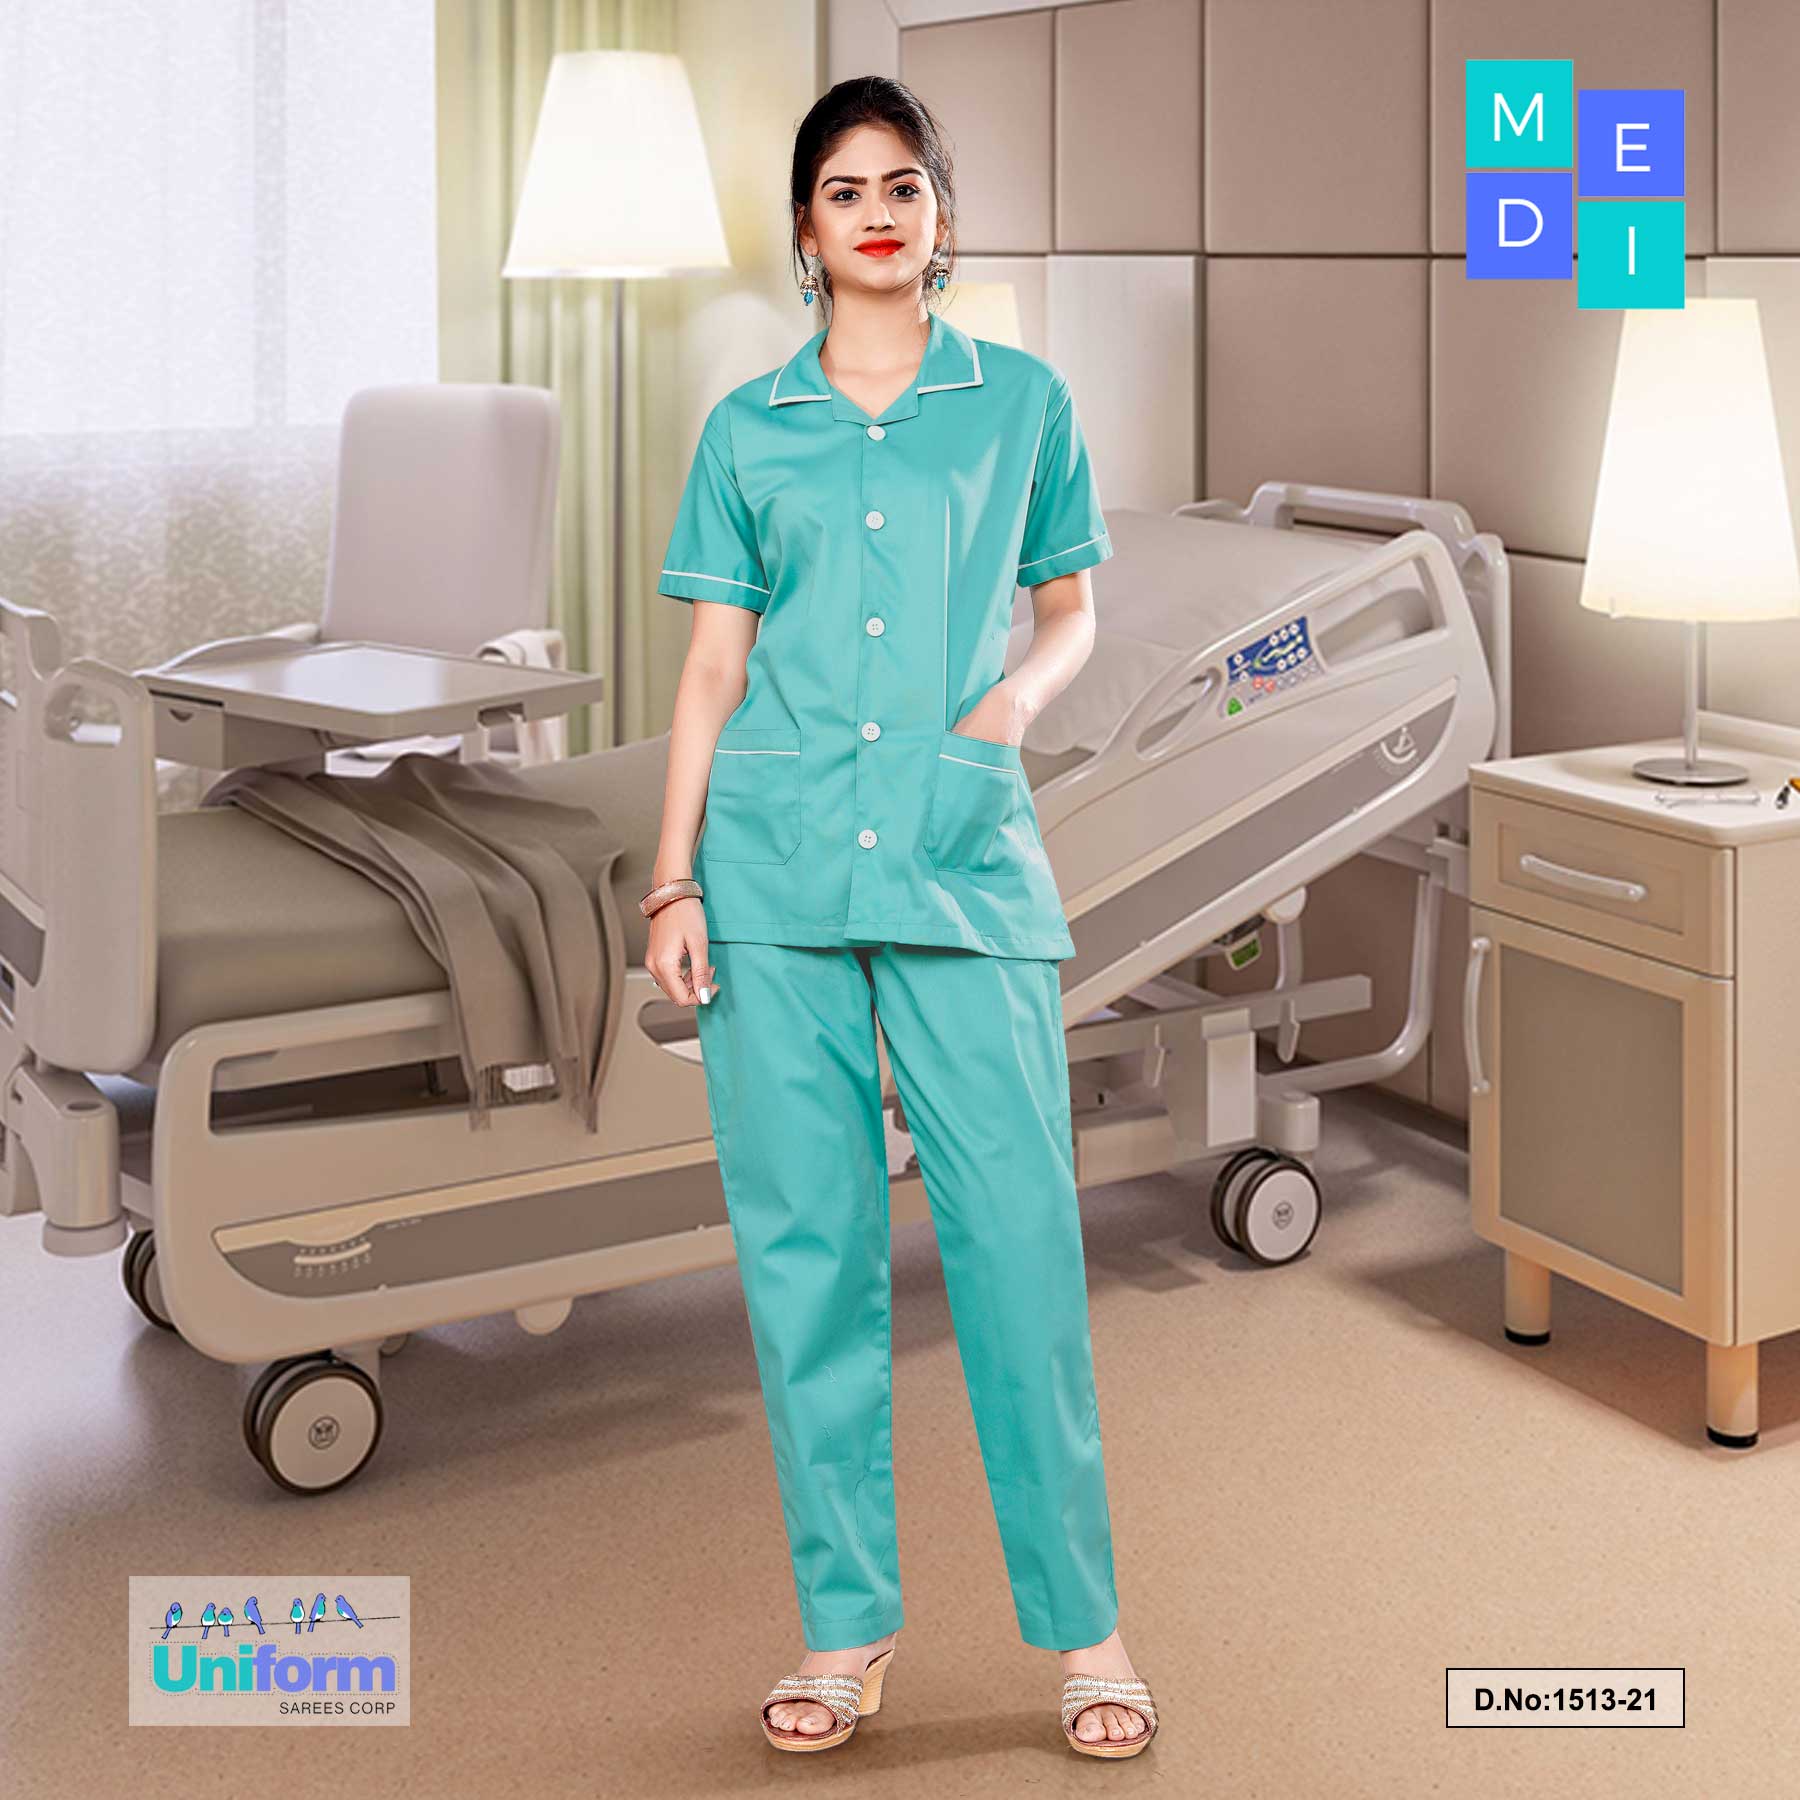 Women's Nurse Wear, Hospital Uniform For Nurses